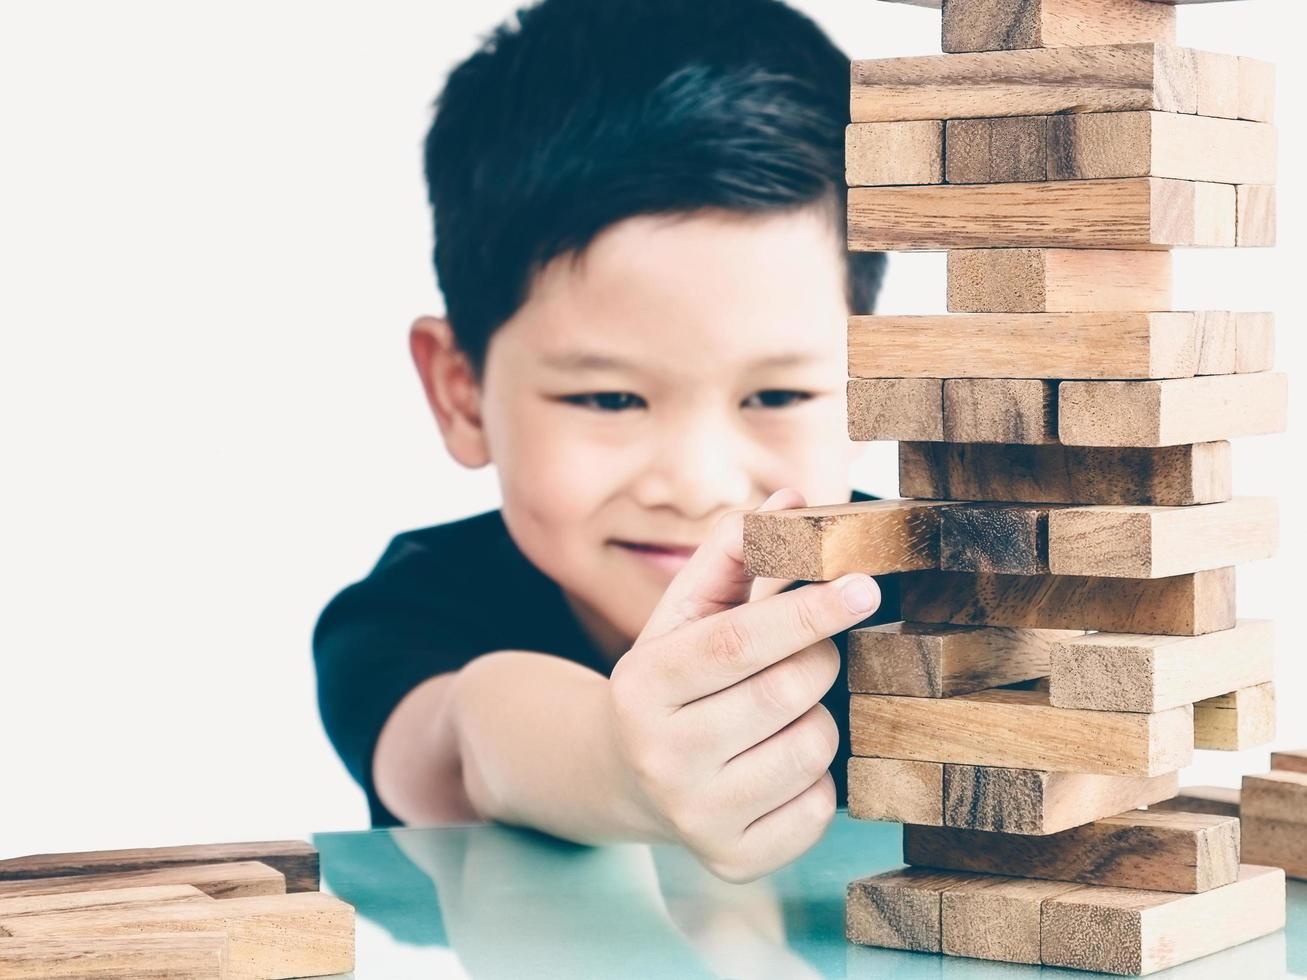 tom vintage de criança asiática está jogando jogo de torre de blocos de madeira para praticar habilidade física e mental. a foto está focada é as mãos.